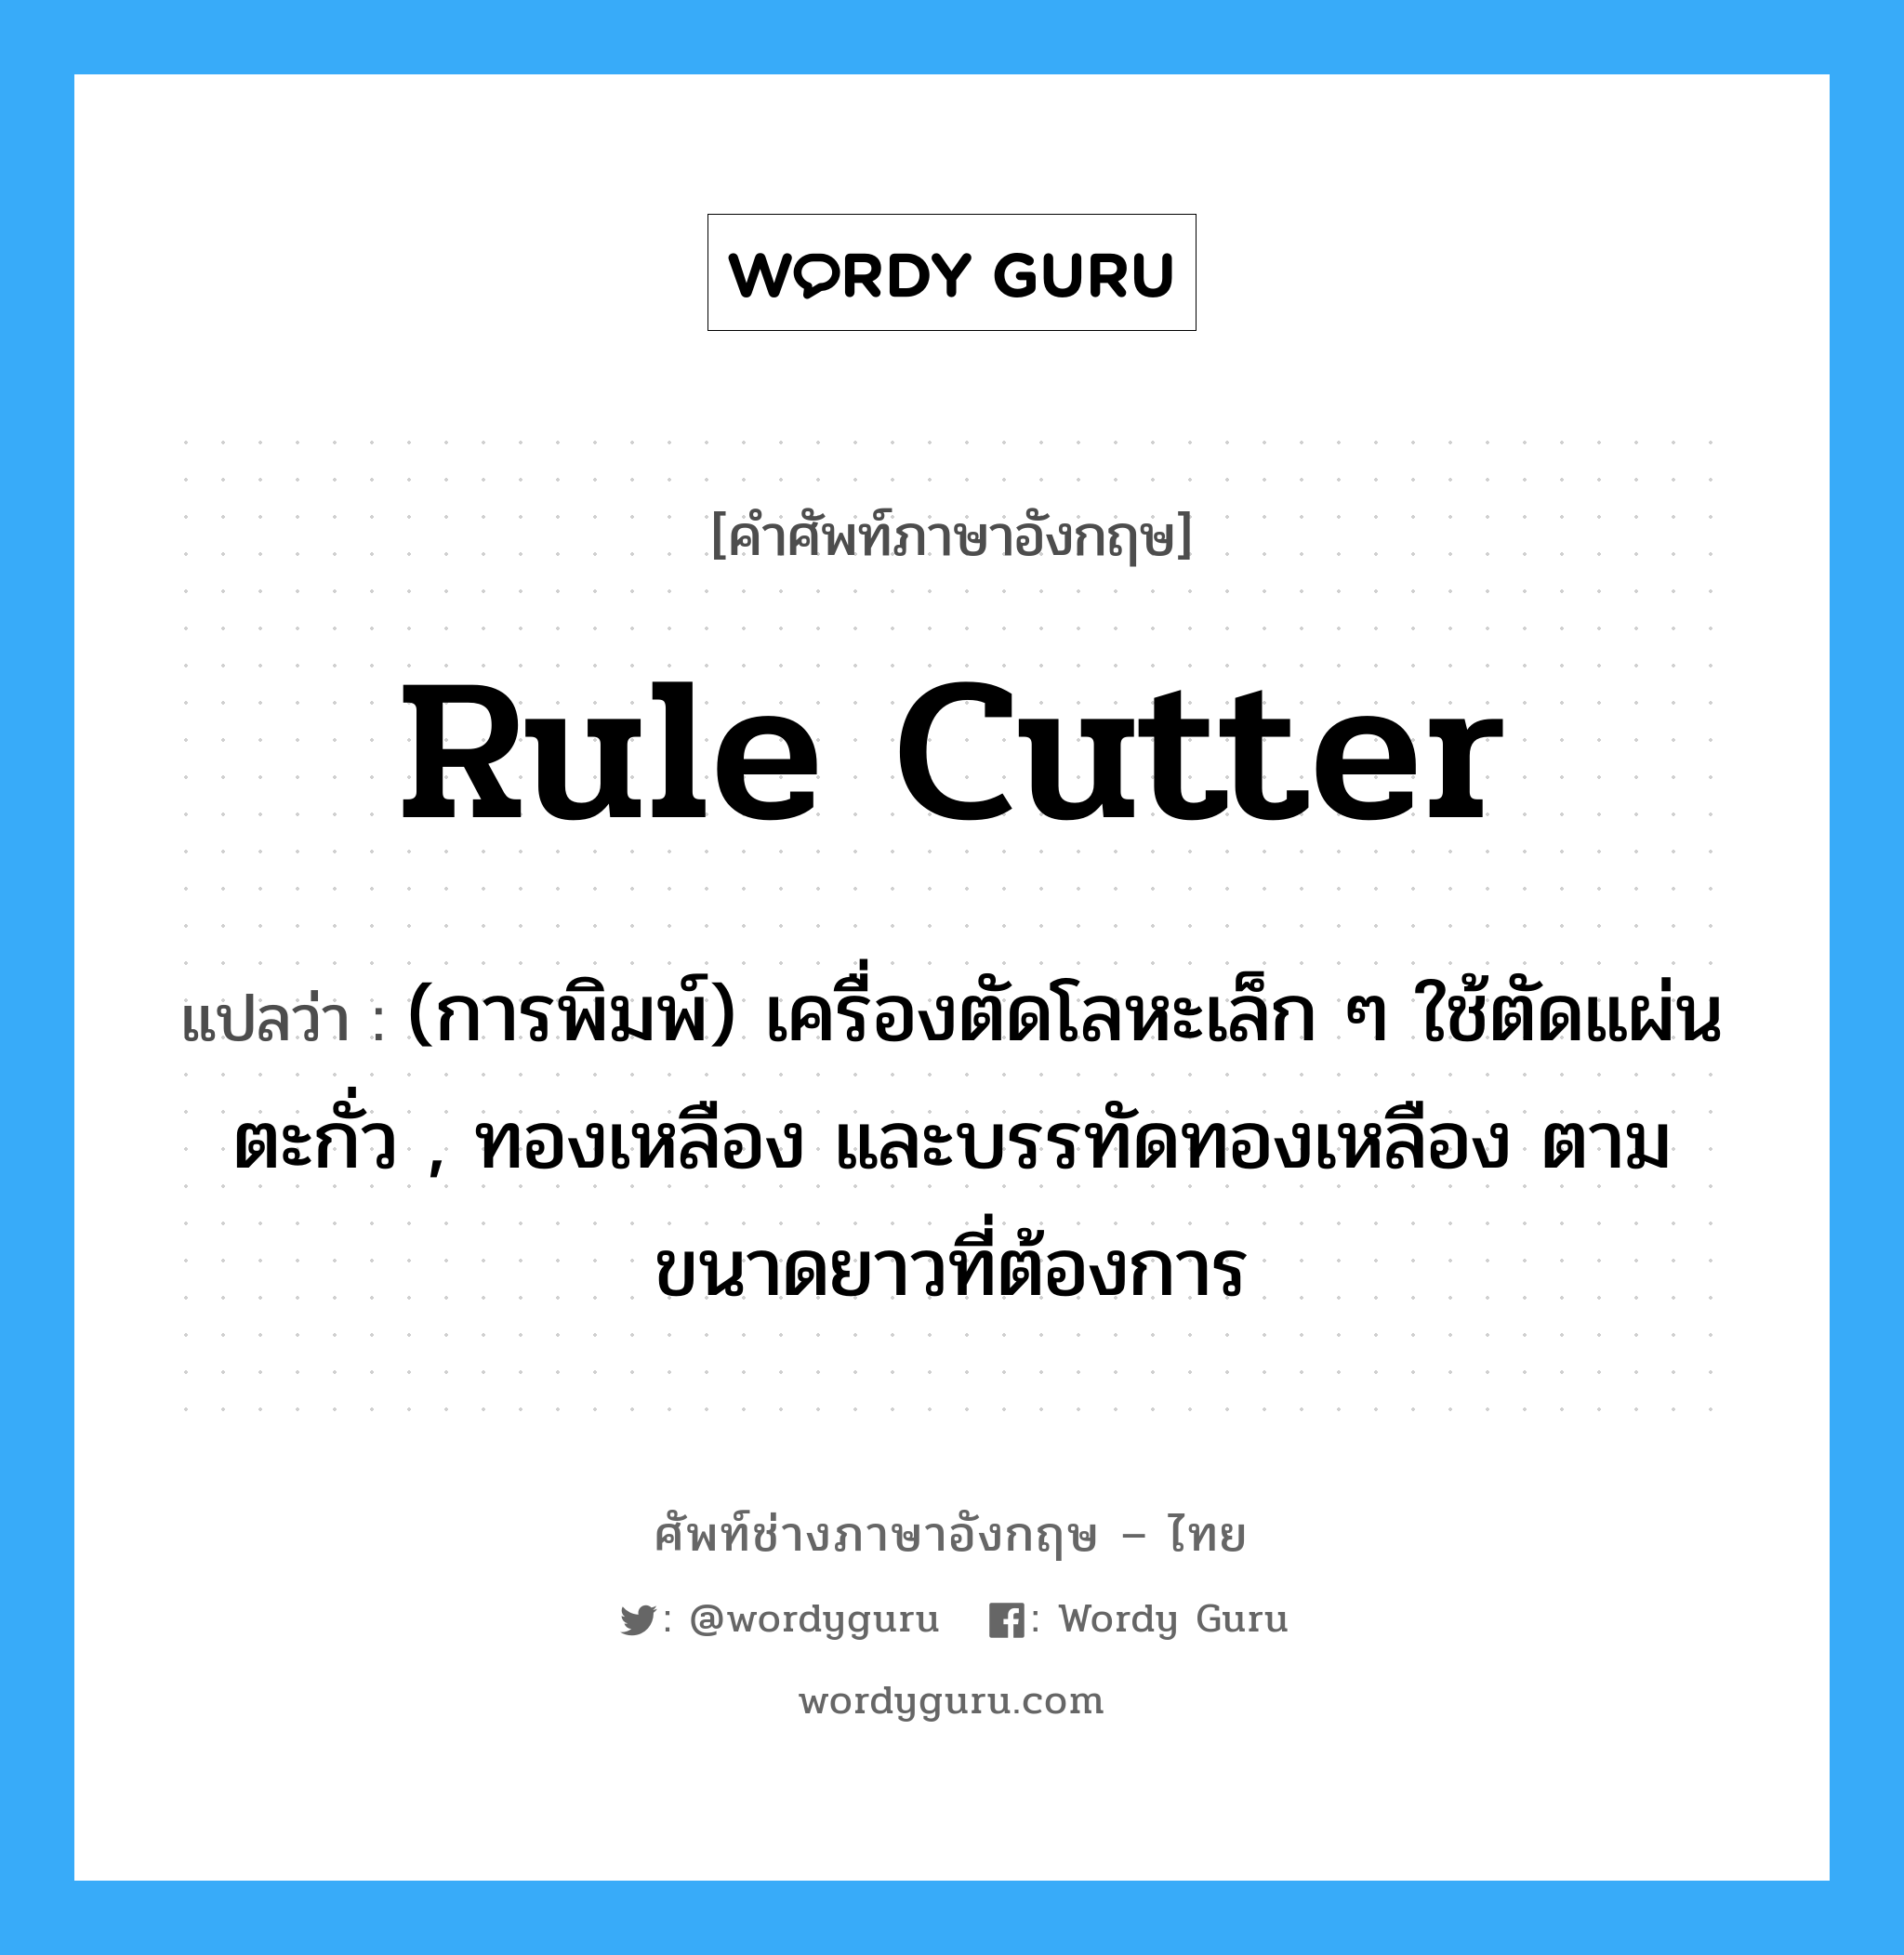 rule cutter แปลว่า?, คำศัพท์ช่างภาษาอังกฤษ - ไทย rule cutter คำศัพท์ภาษาอังกฤษ rule cutter แปลว่า (การพิมพ์) เครื่องตัดโลหะเล็ก ๆ ใช้ตัดแผ่นตะกั่ว , ทองเหลือง และบรรทัดทองเหลือง ตามขนาดยาวที่ต้องการ